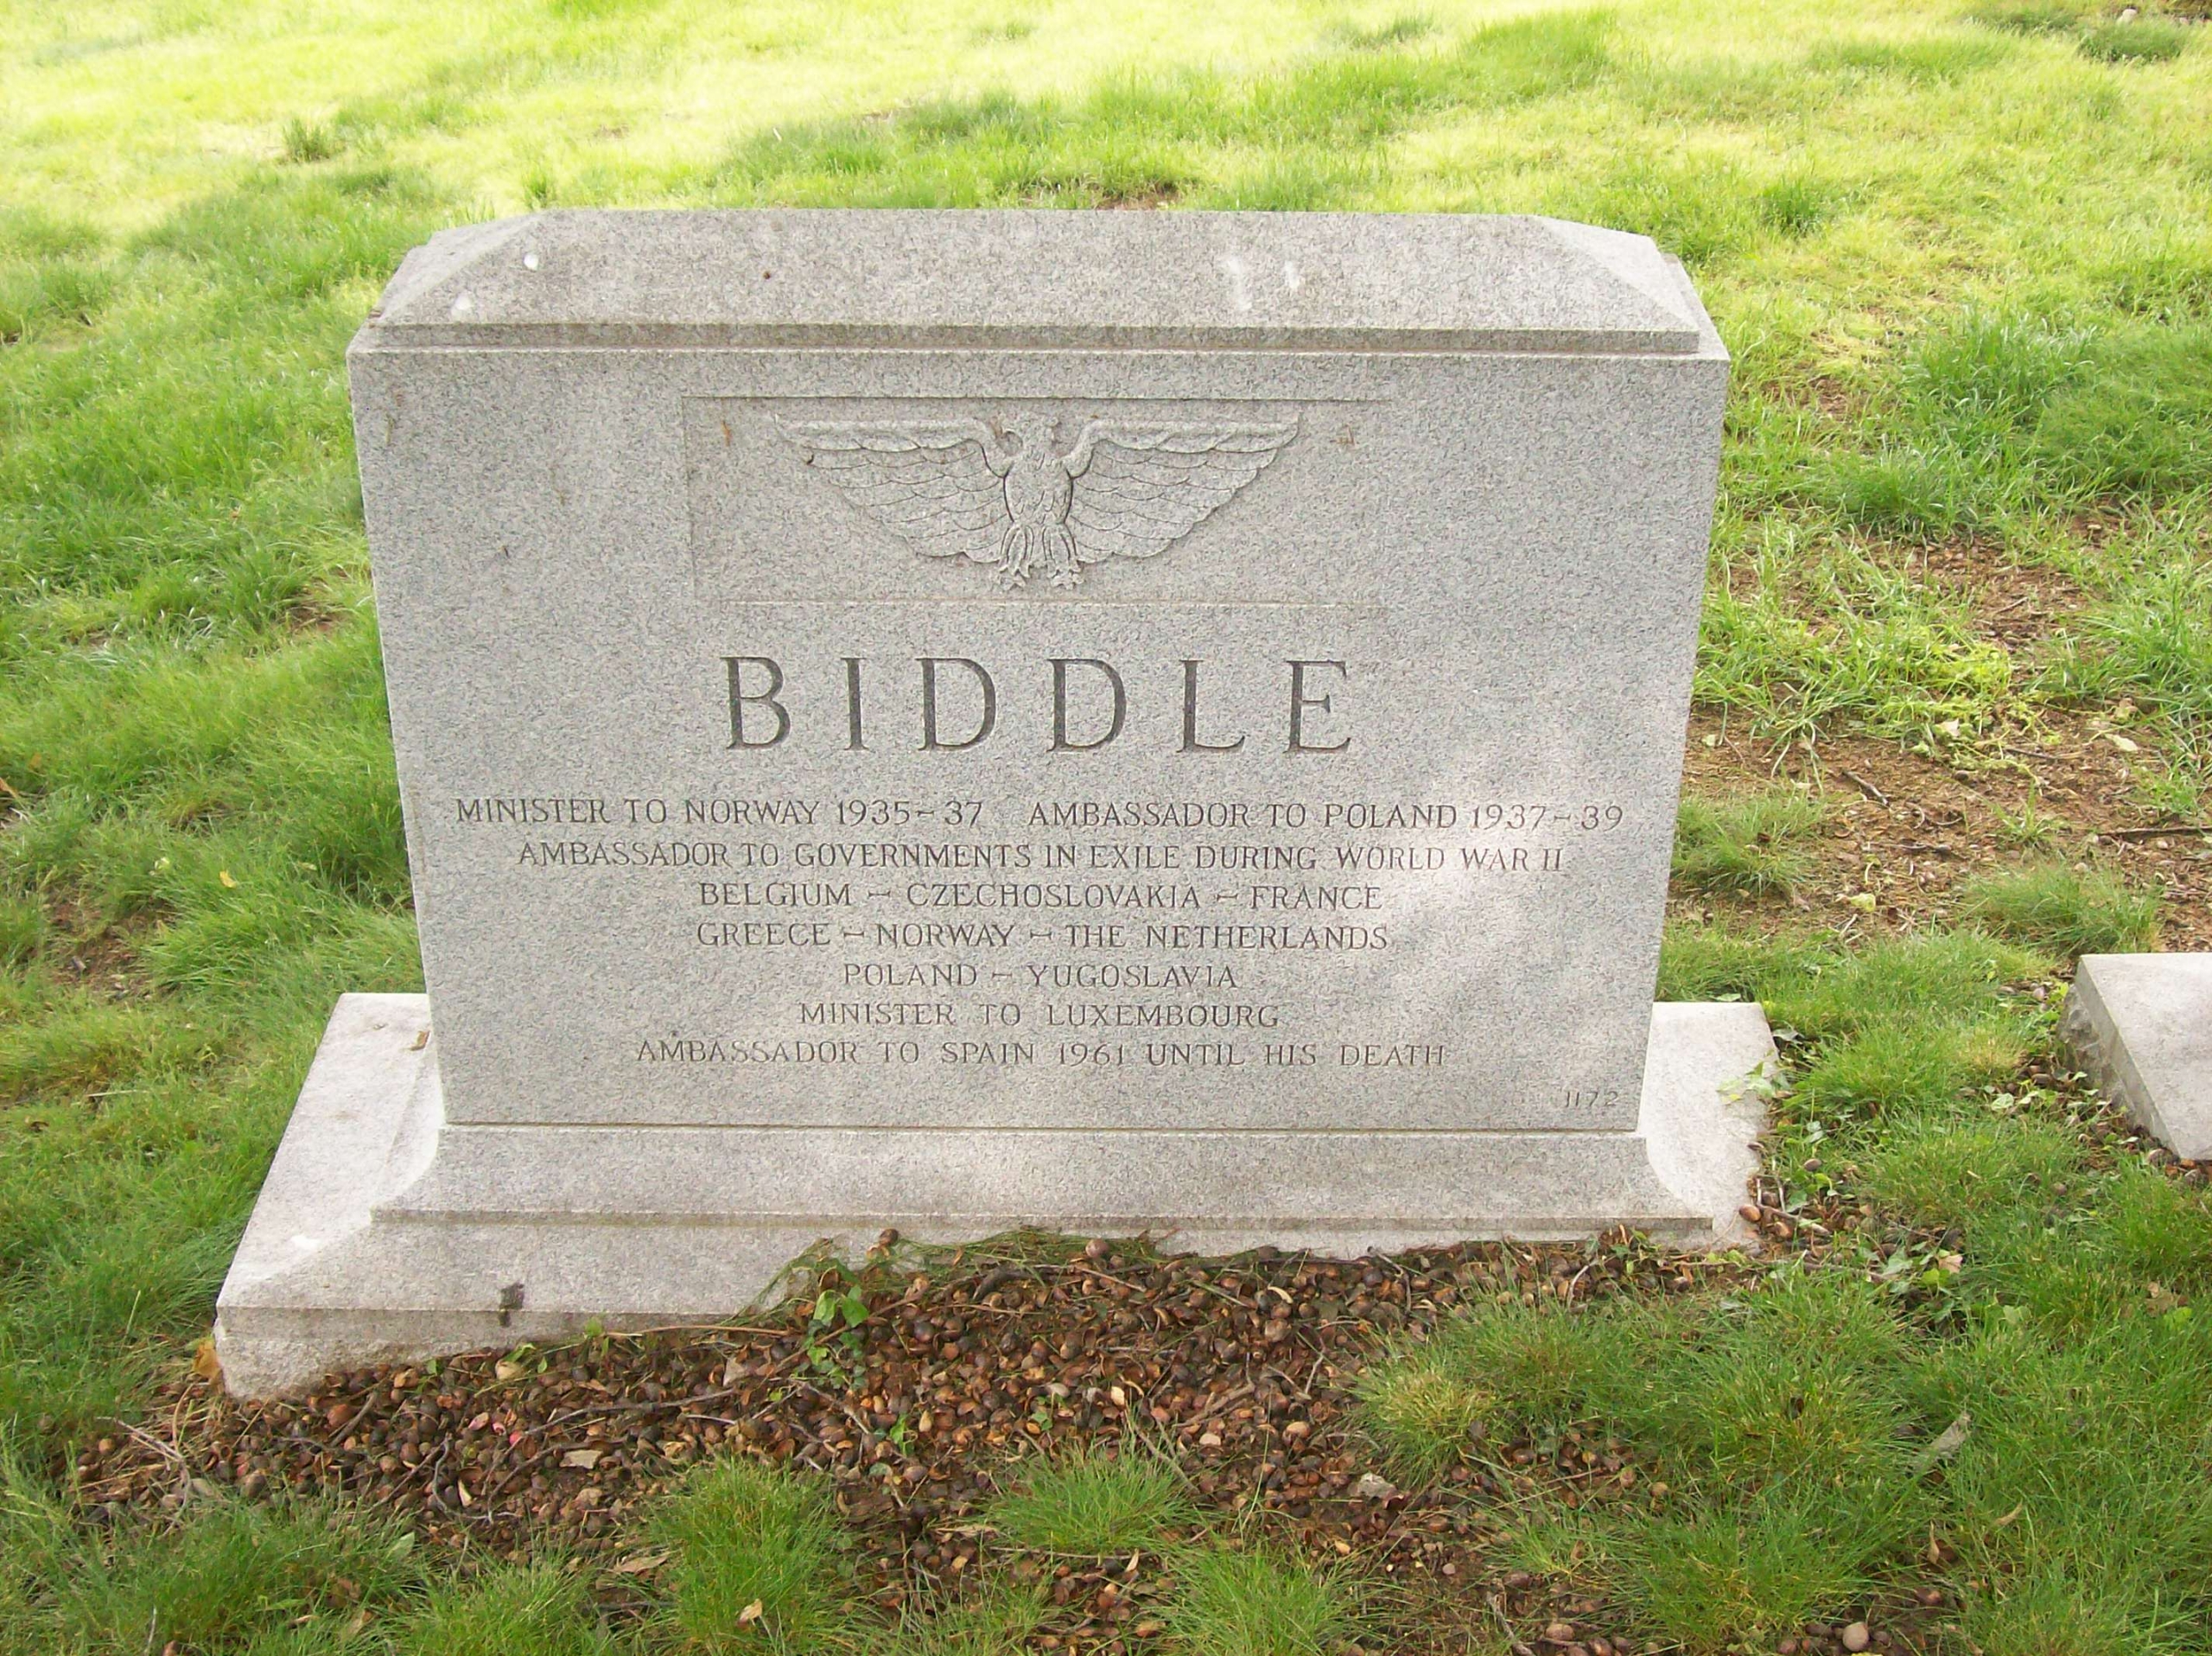 ajdbiddlejr-gravesite-photo-may-2008-002